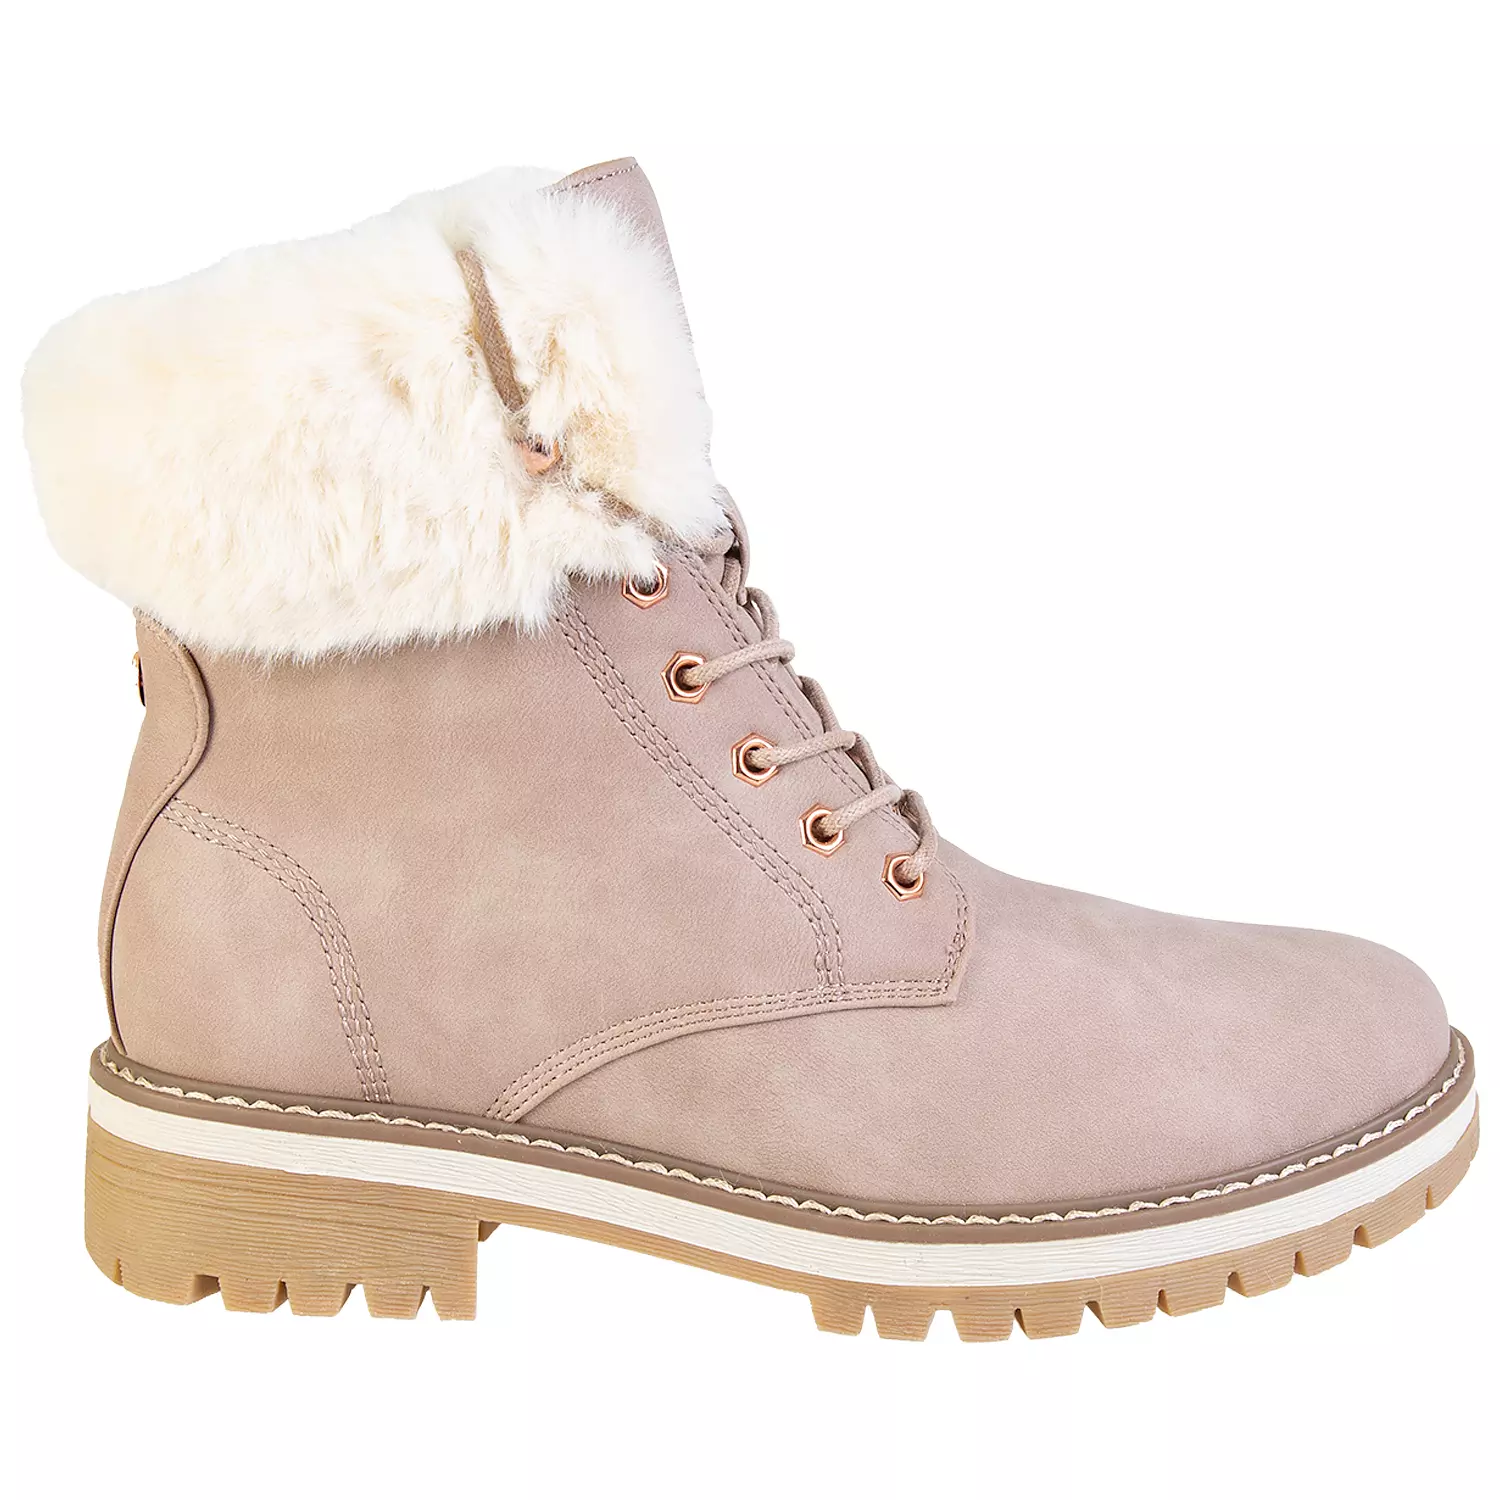 Lace-up faux fur trim fashion combat boots, pink, size 8